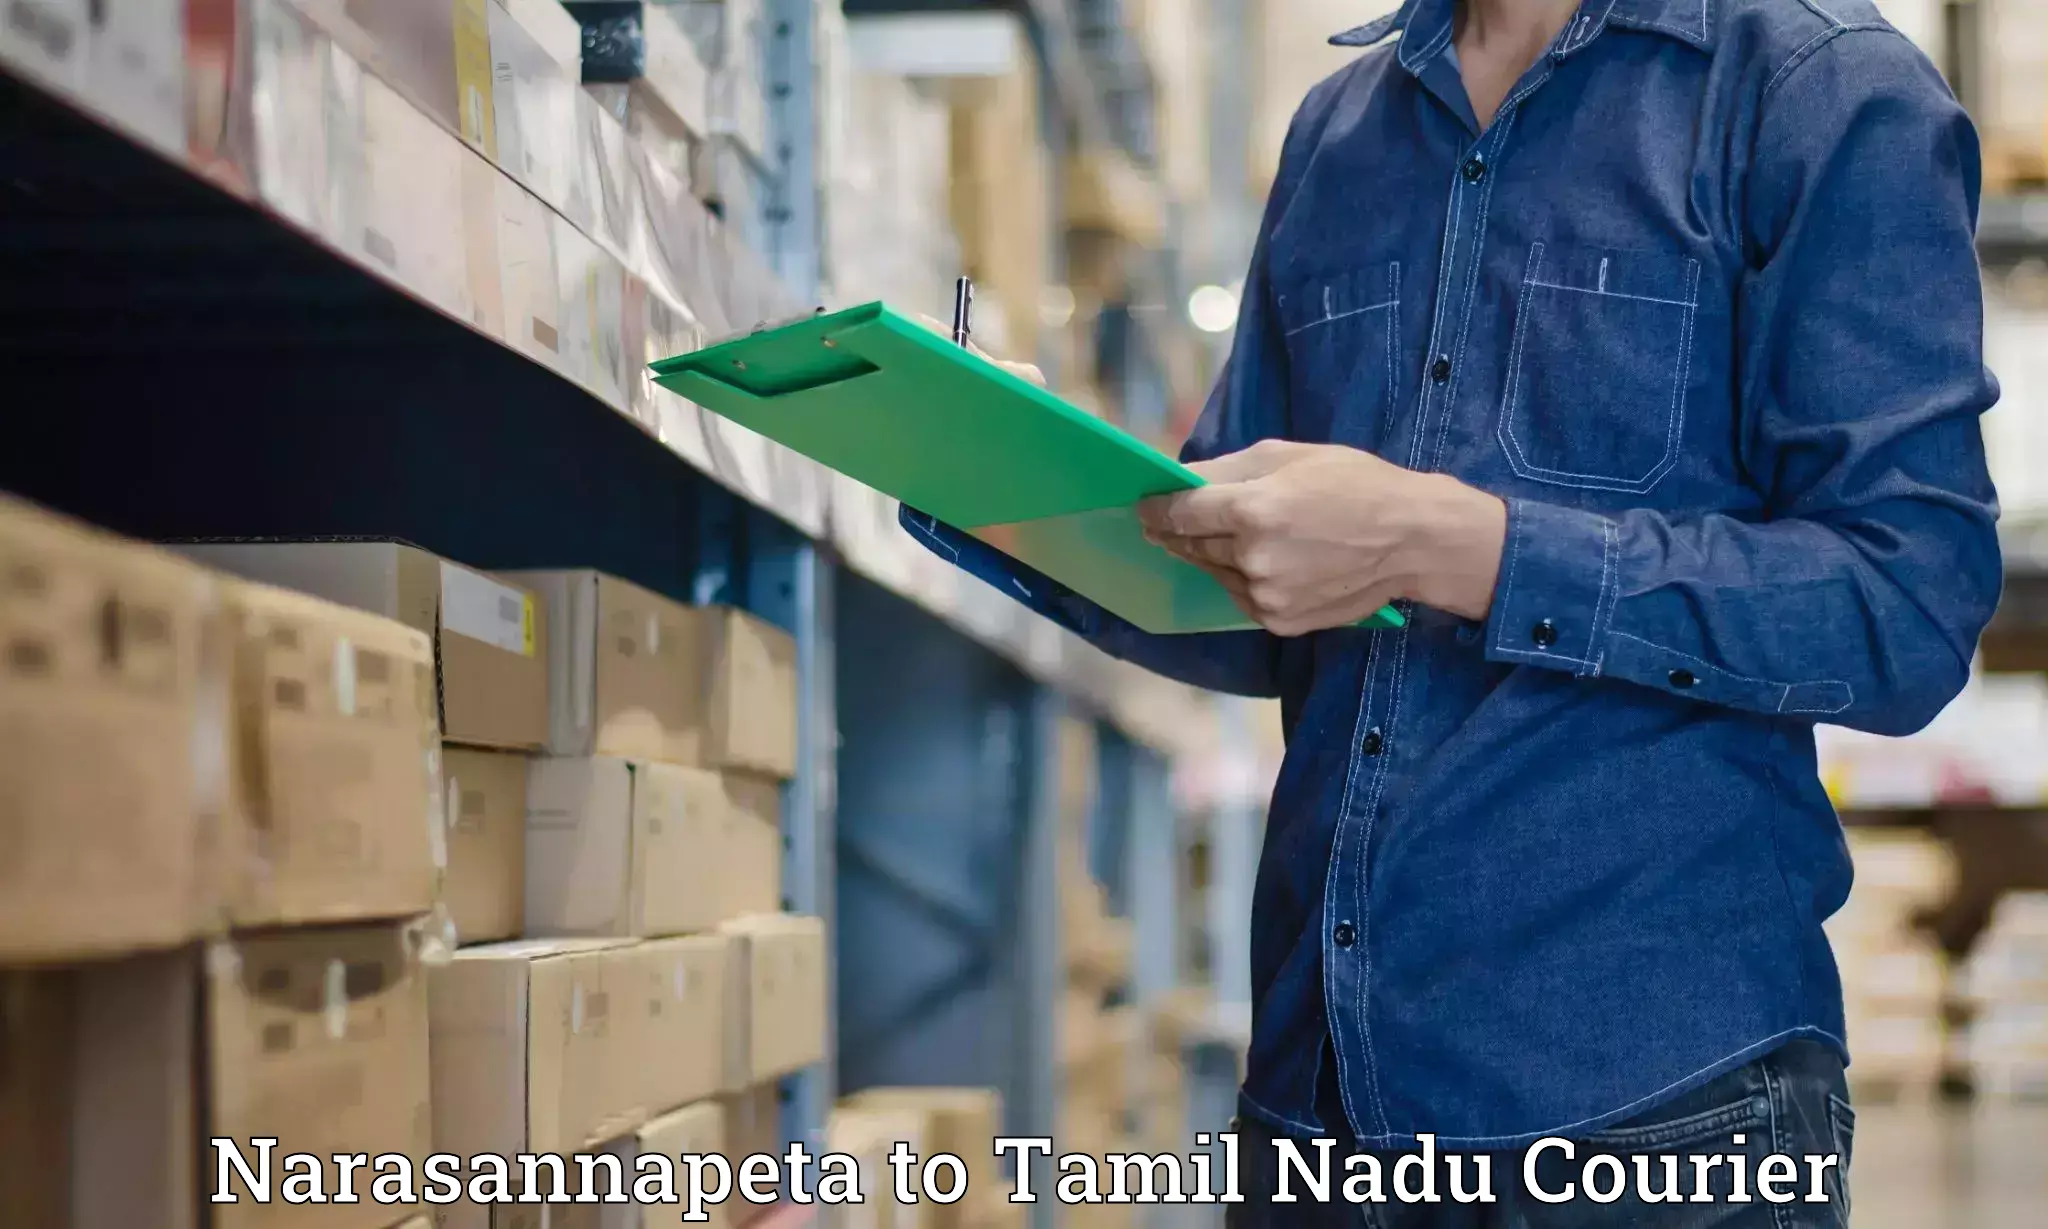 Reliable parcel services Narasannapeta to Sattur